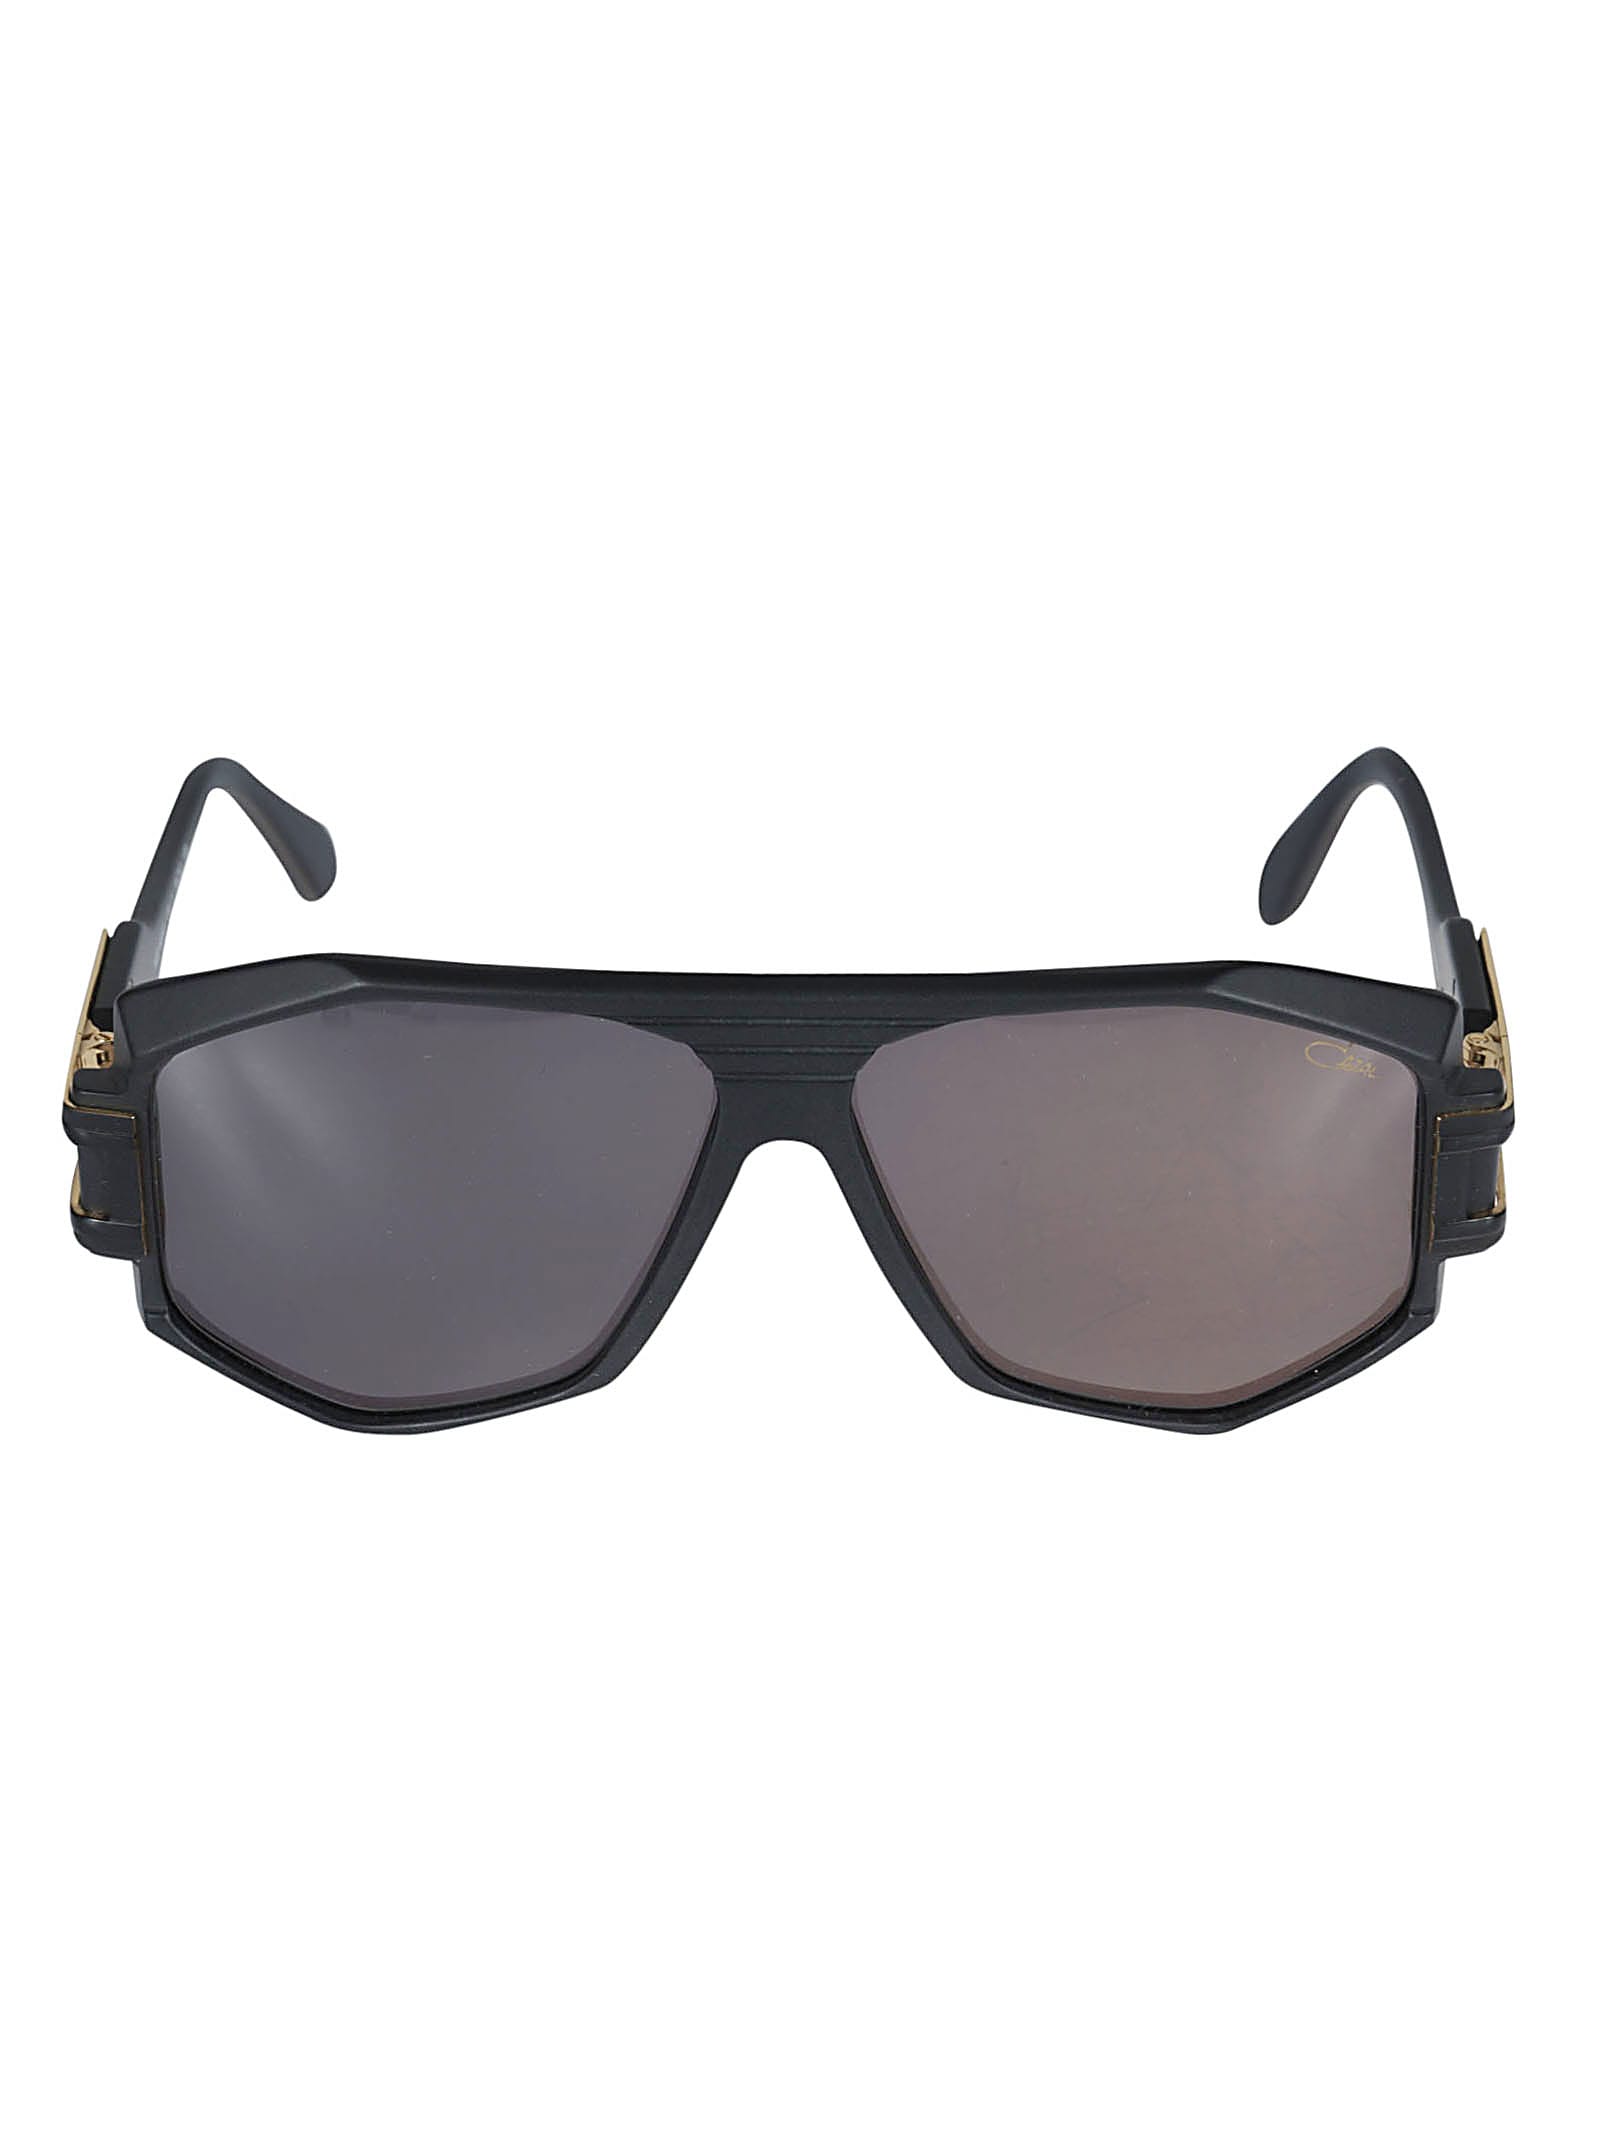 Cazal Wayfarer Sunglasses In Col 011 Black